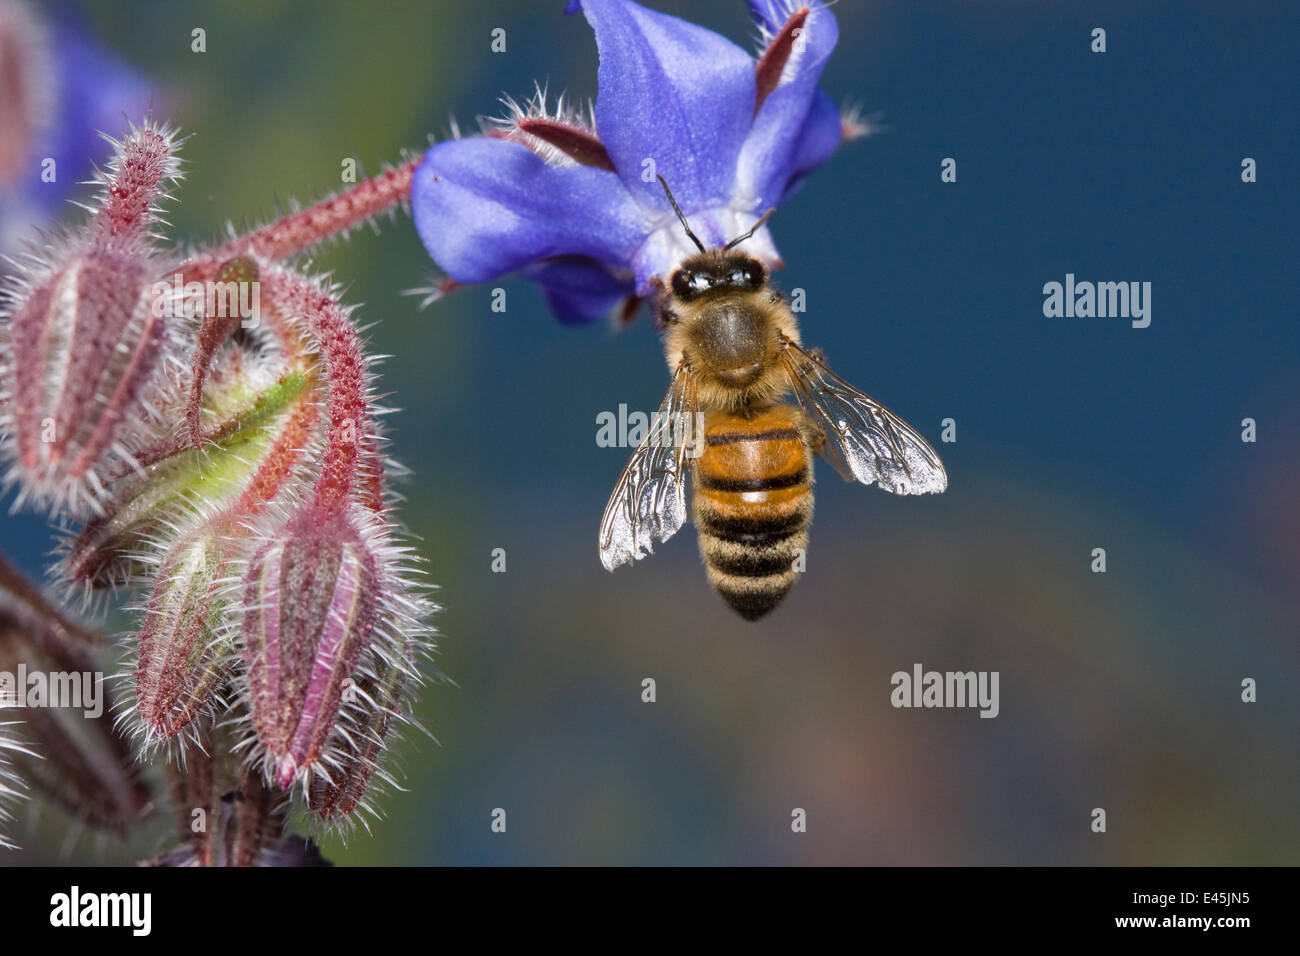 Honey bee (Apis mellifera) feeding on borage flower, UK Stock Photo